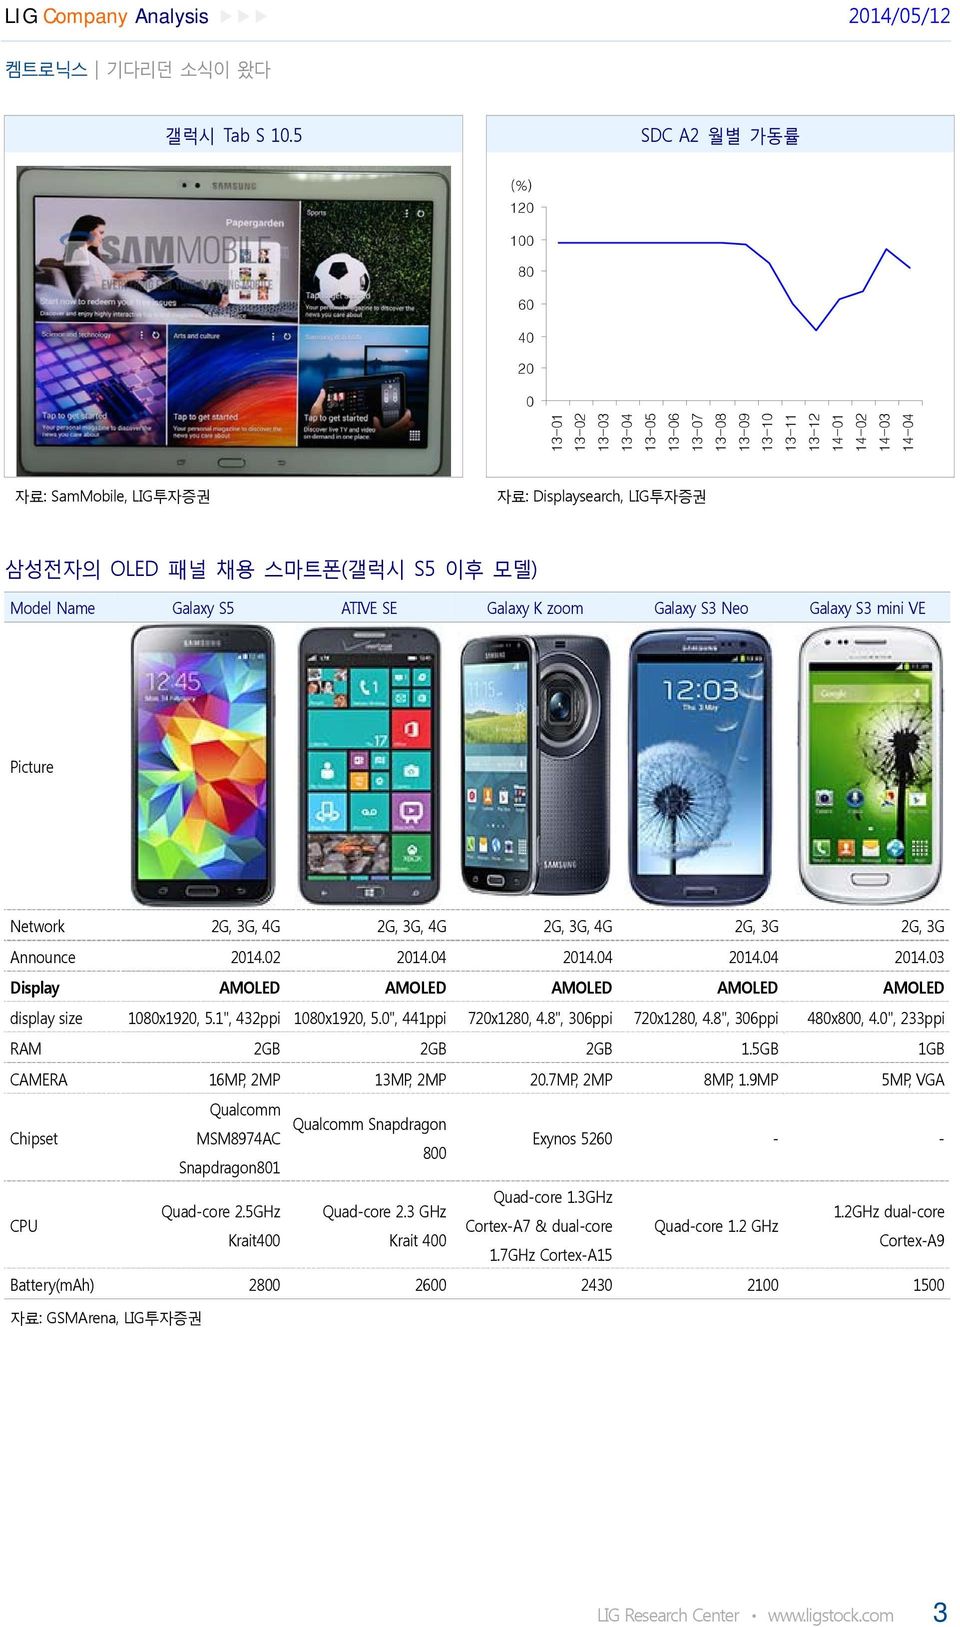 패널 채용 스마트폰(갤럭시 S5 이후 모델) Model Name Galaxy S5 ATIVE SE Galaxy K zoom Galaxy S3 Neo Galaxy S3 mini VE Picture Network 2G, 3G, 4G 2G, 3G, 4G 2G, 3G, 4G 2G, 3G 2G, 3G Announce 2014.02 2014.04 2014.